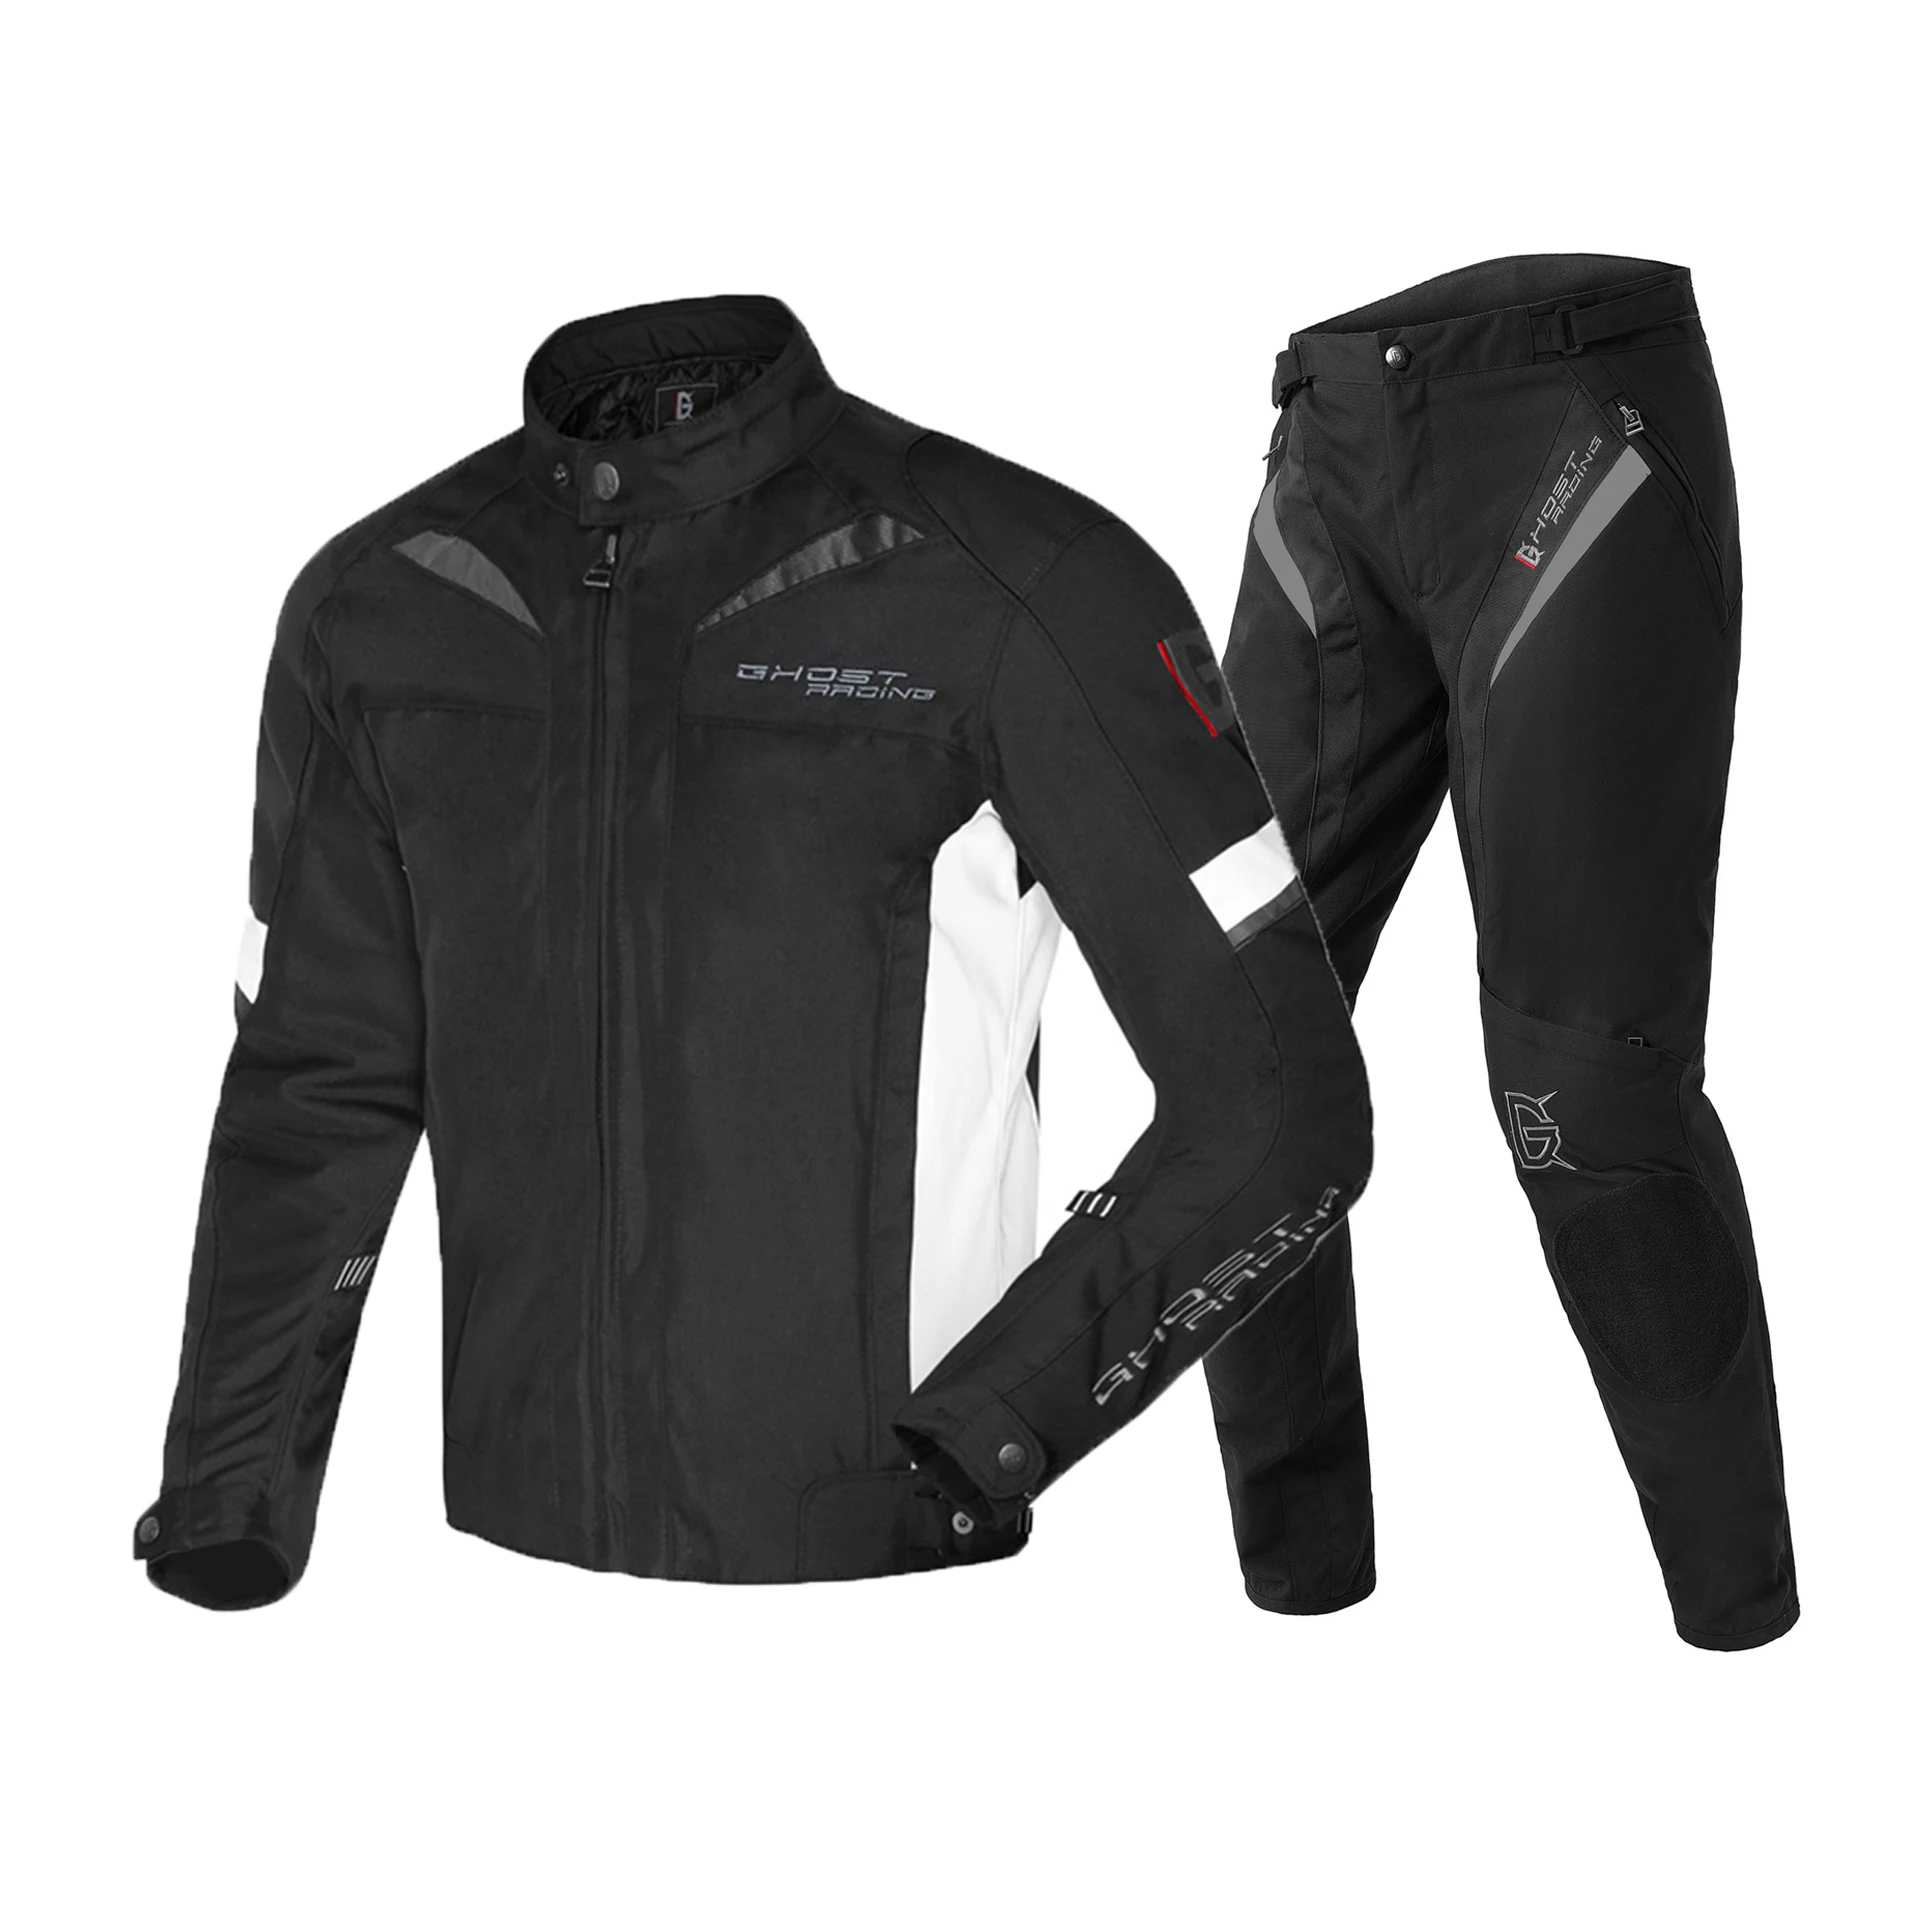 GHOST RACING мотоциклетная куртка мужской костюм для мотокросса куртка и брюки мото куртка защитное снаряжение броня мотоциклетная одежда 4 сезона - Цвет: GR-Y-01 WH Set